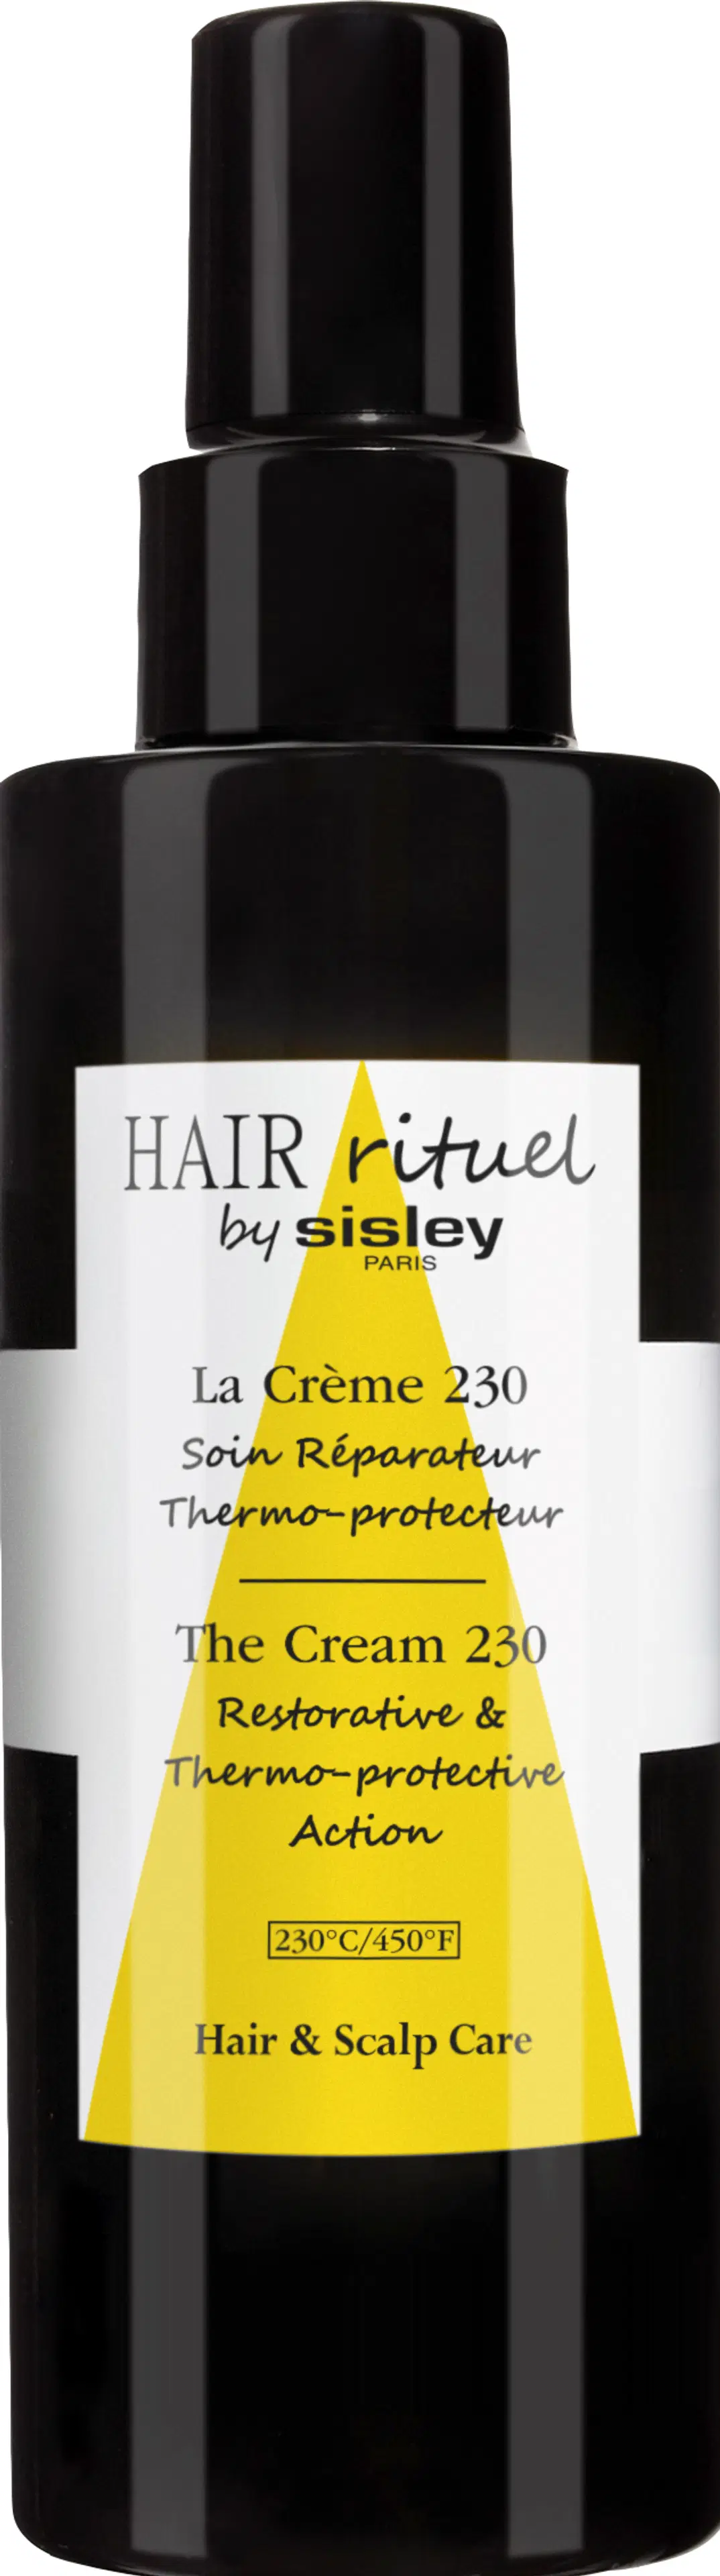 Sisley The Cream 230 lämpösuoja hiuksille 150 ml